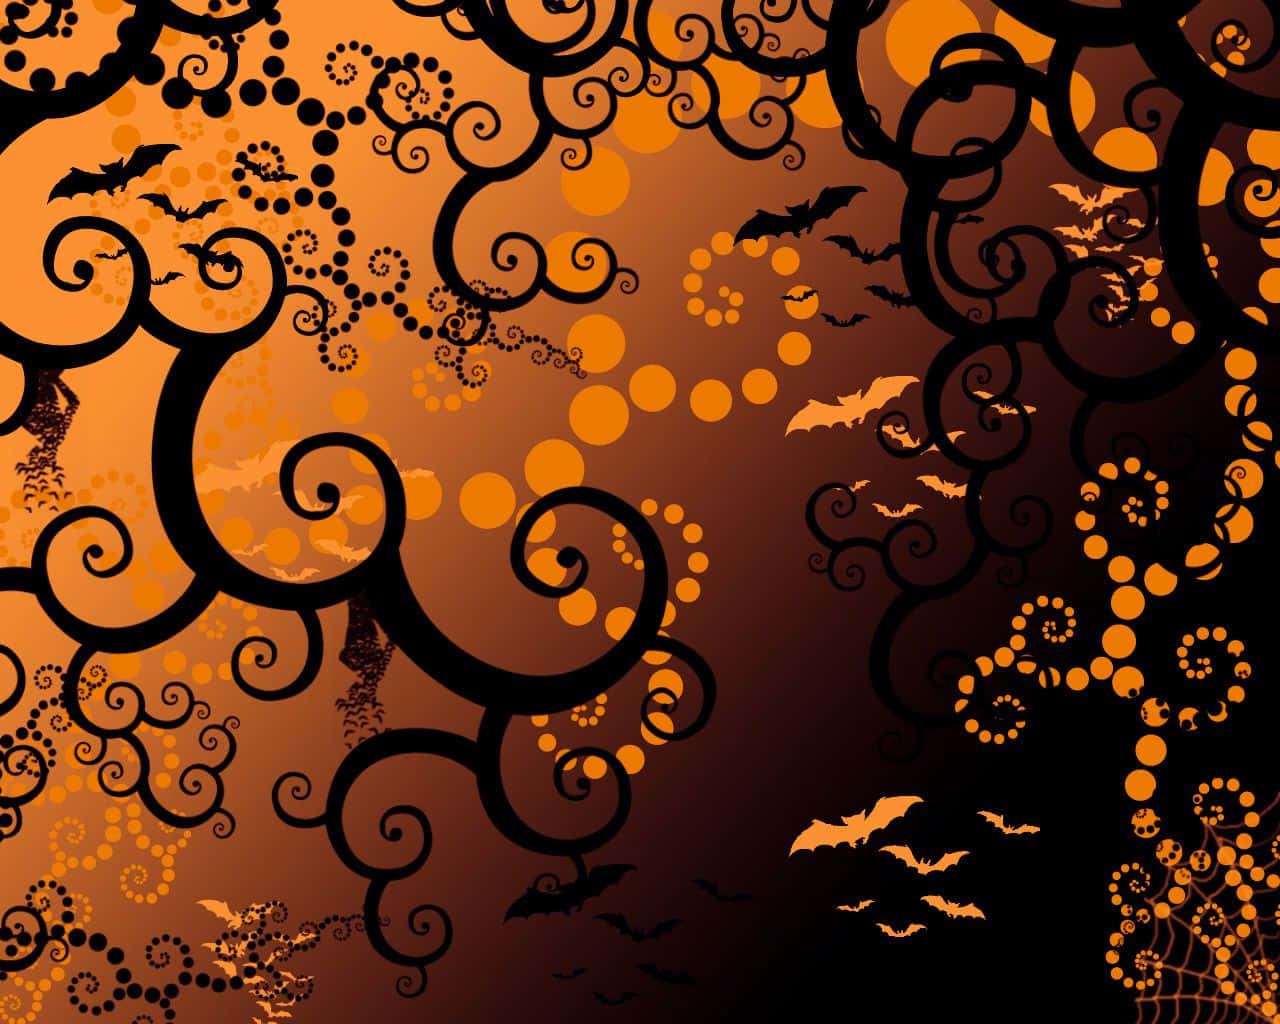 Spooky Desktop 1280 X 1024 Wallpaper